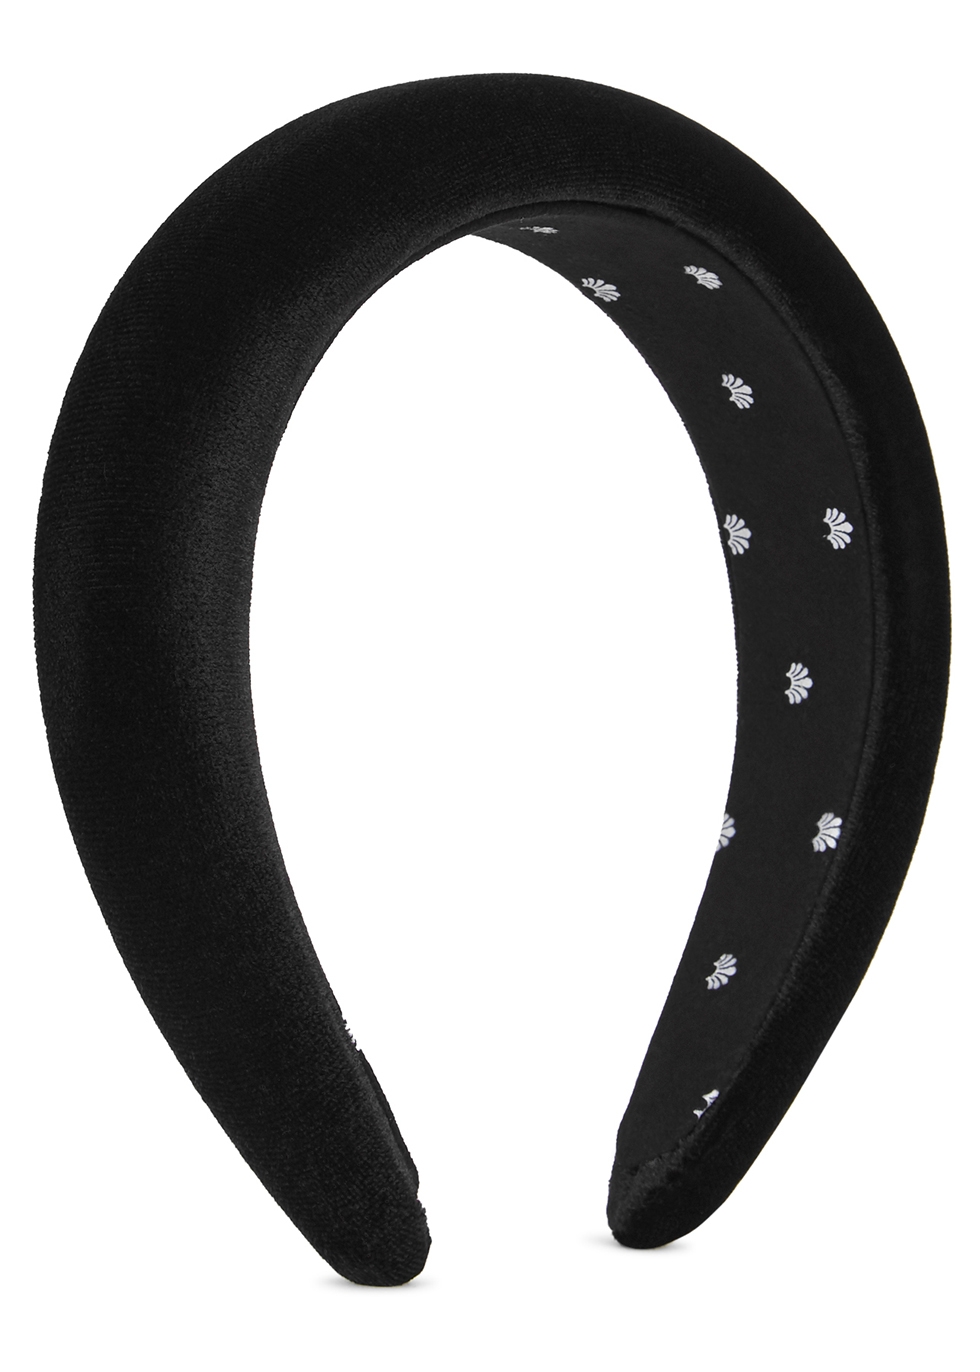 Black padded velvet headband